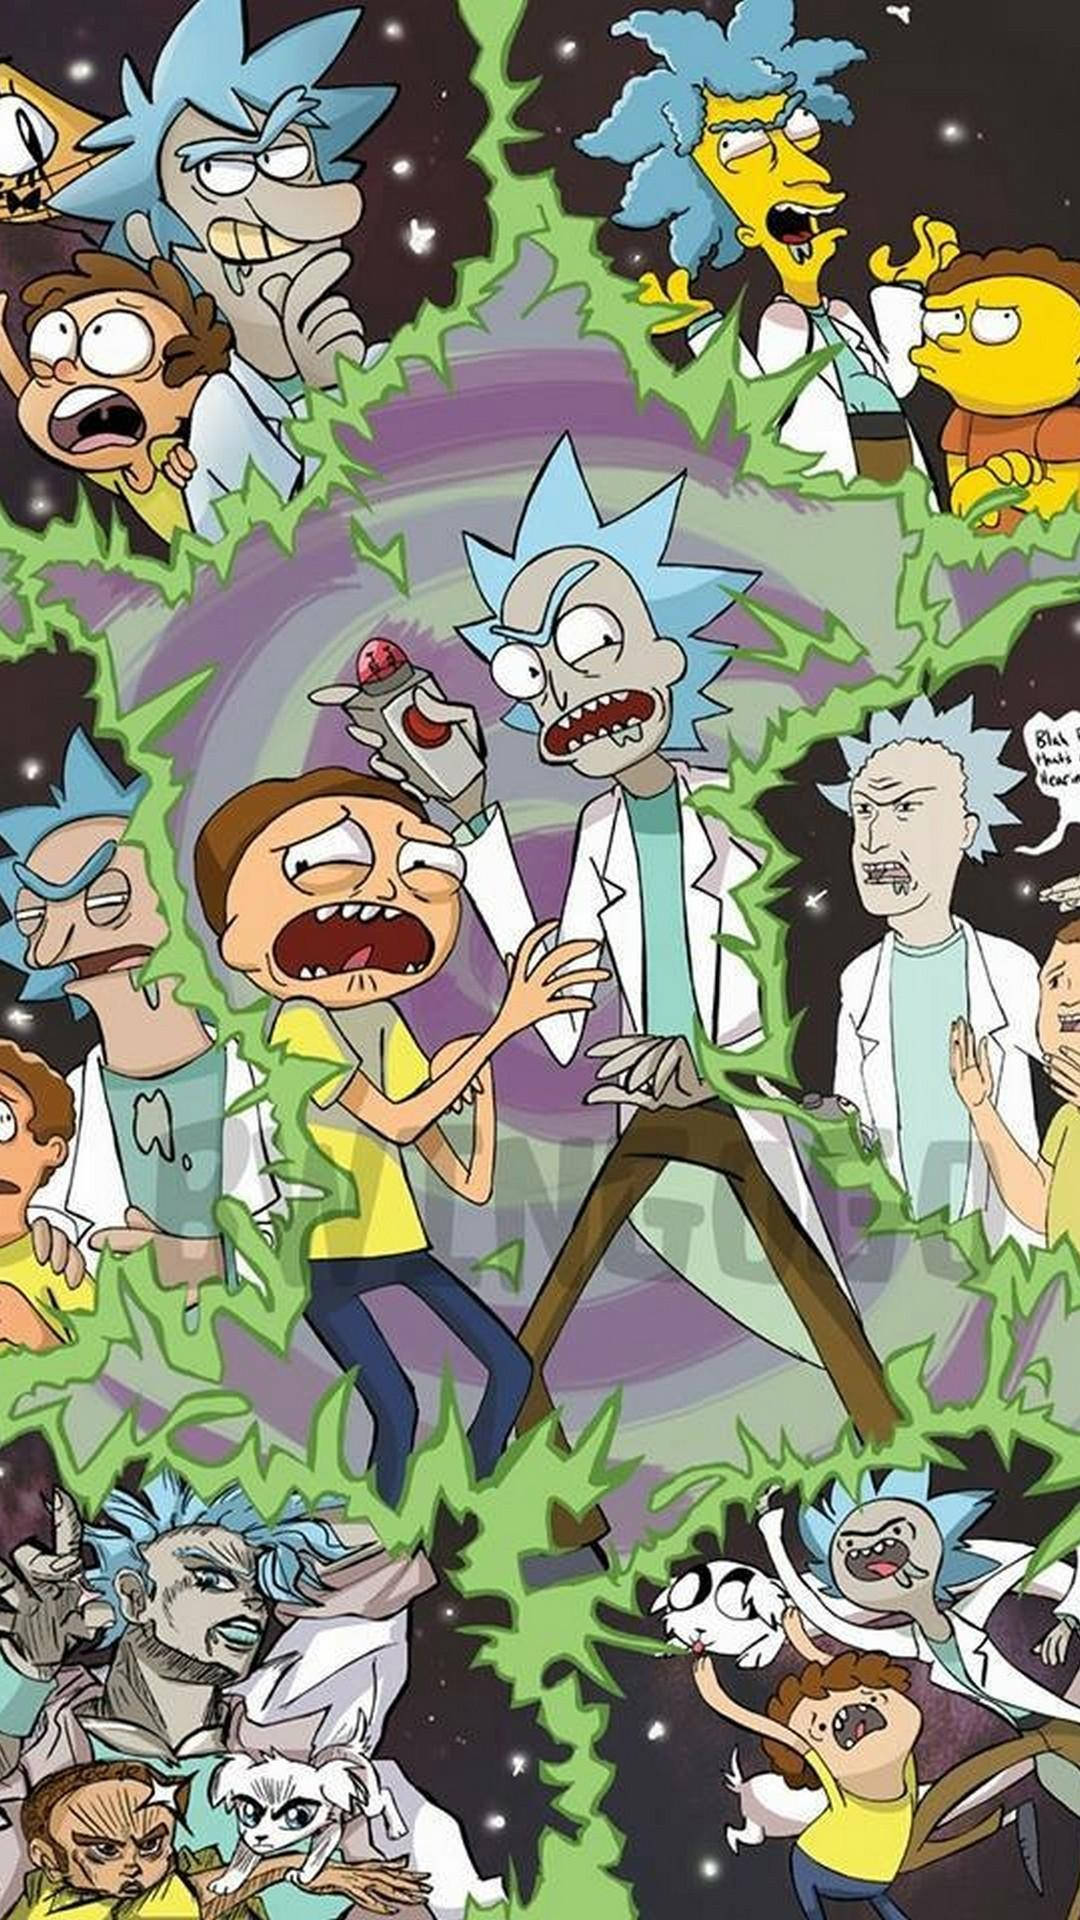 Personaggidel Cartone Animato Rick And Morty In Una Galassia. Sfondo